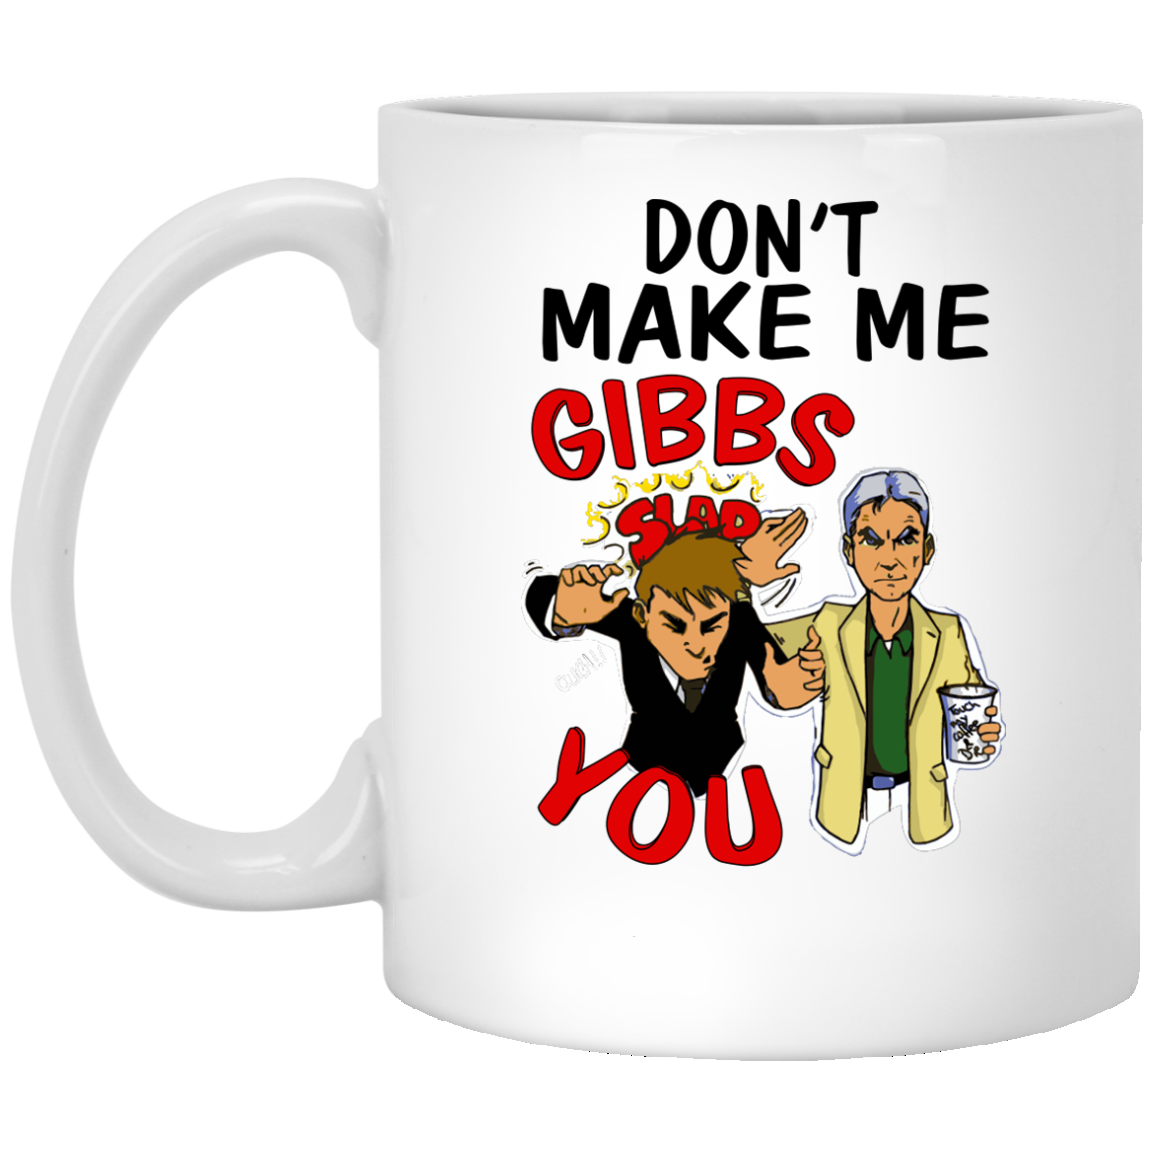 Don't Make Me Gibbs Slap You mugs